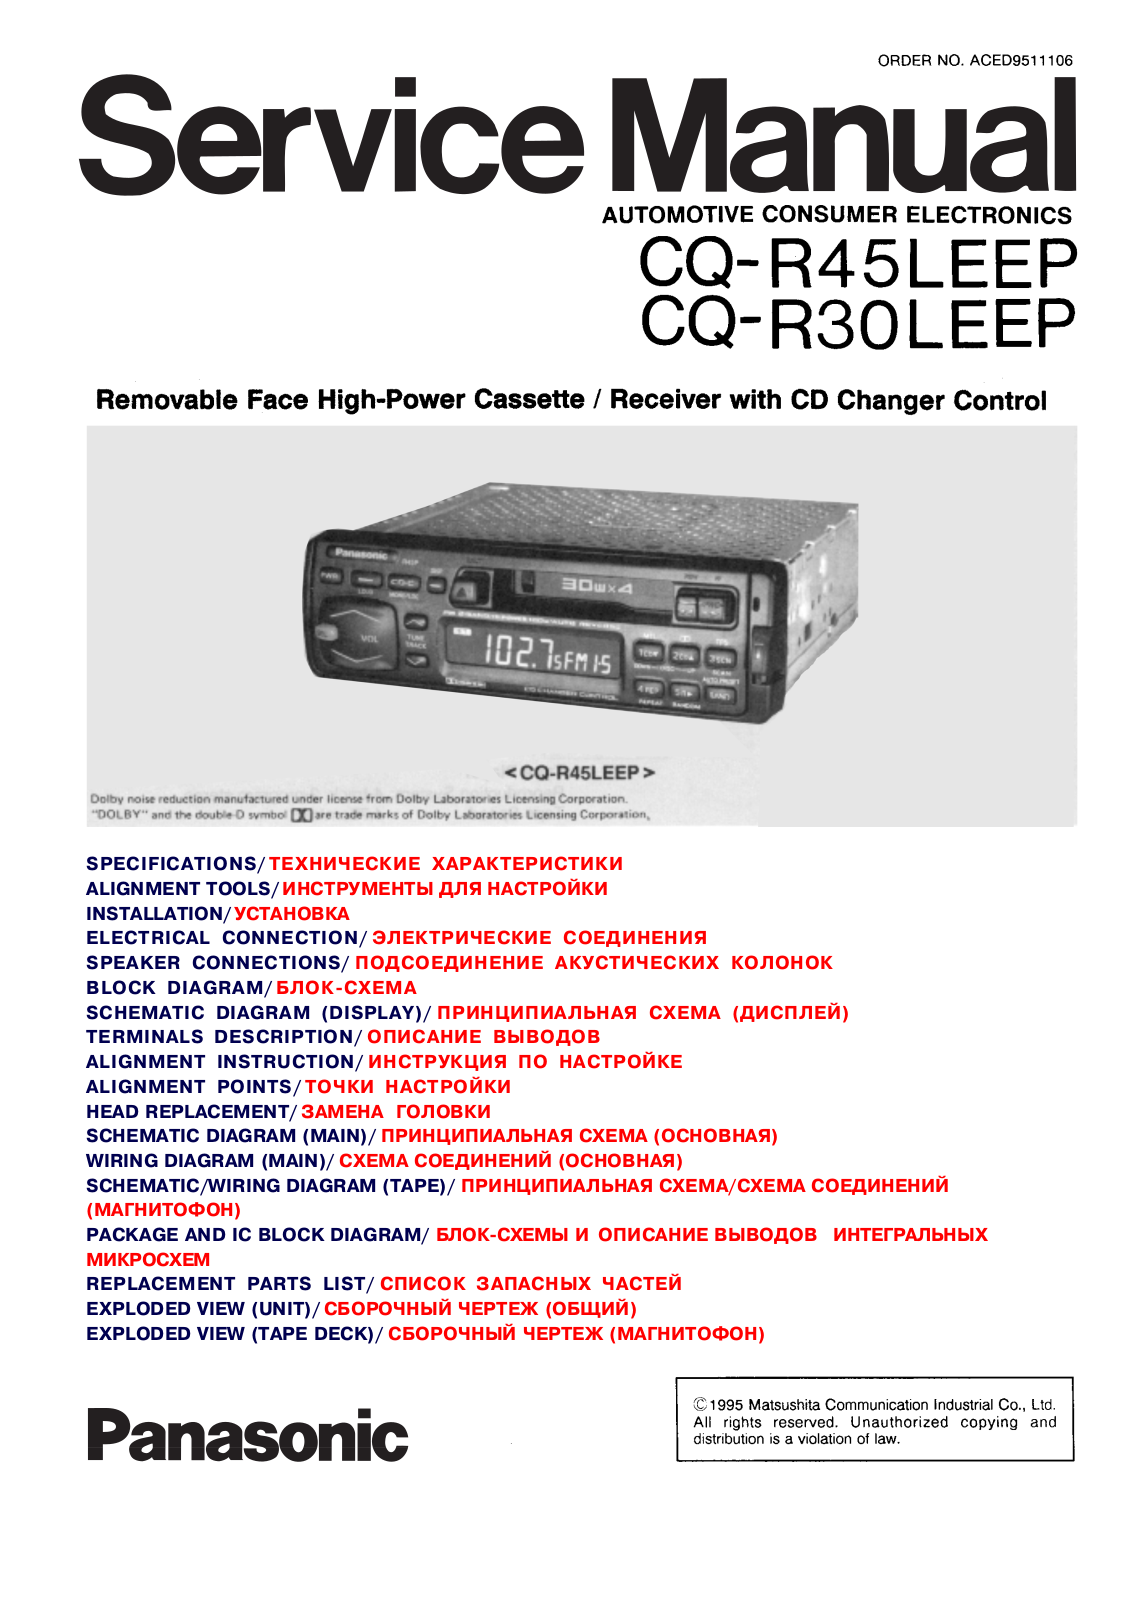 Panasonic CQR-30-LEEP, CQR-45-LEEP Service manual